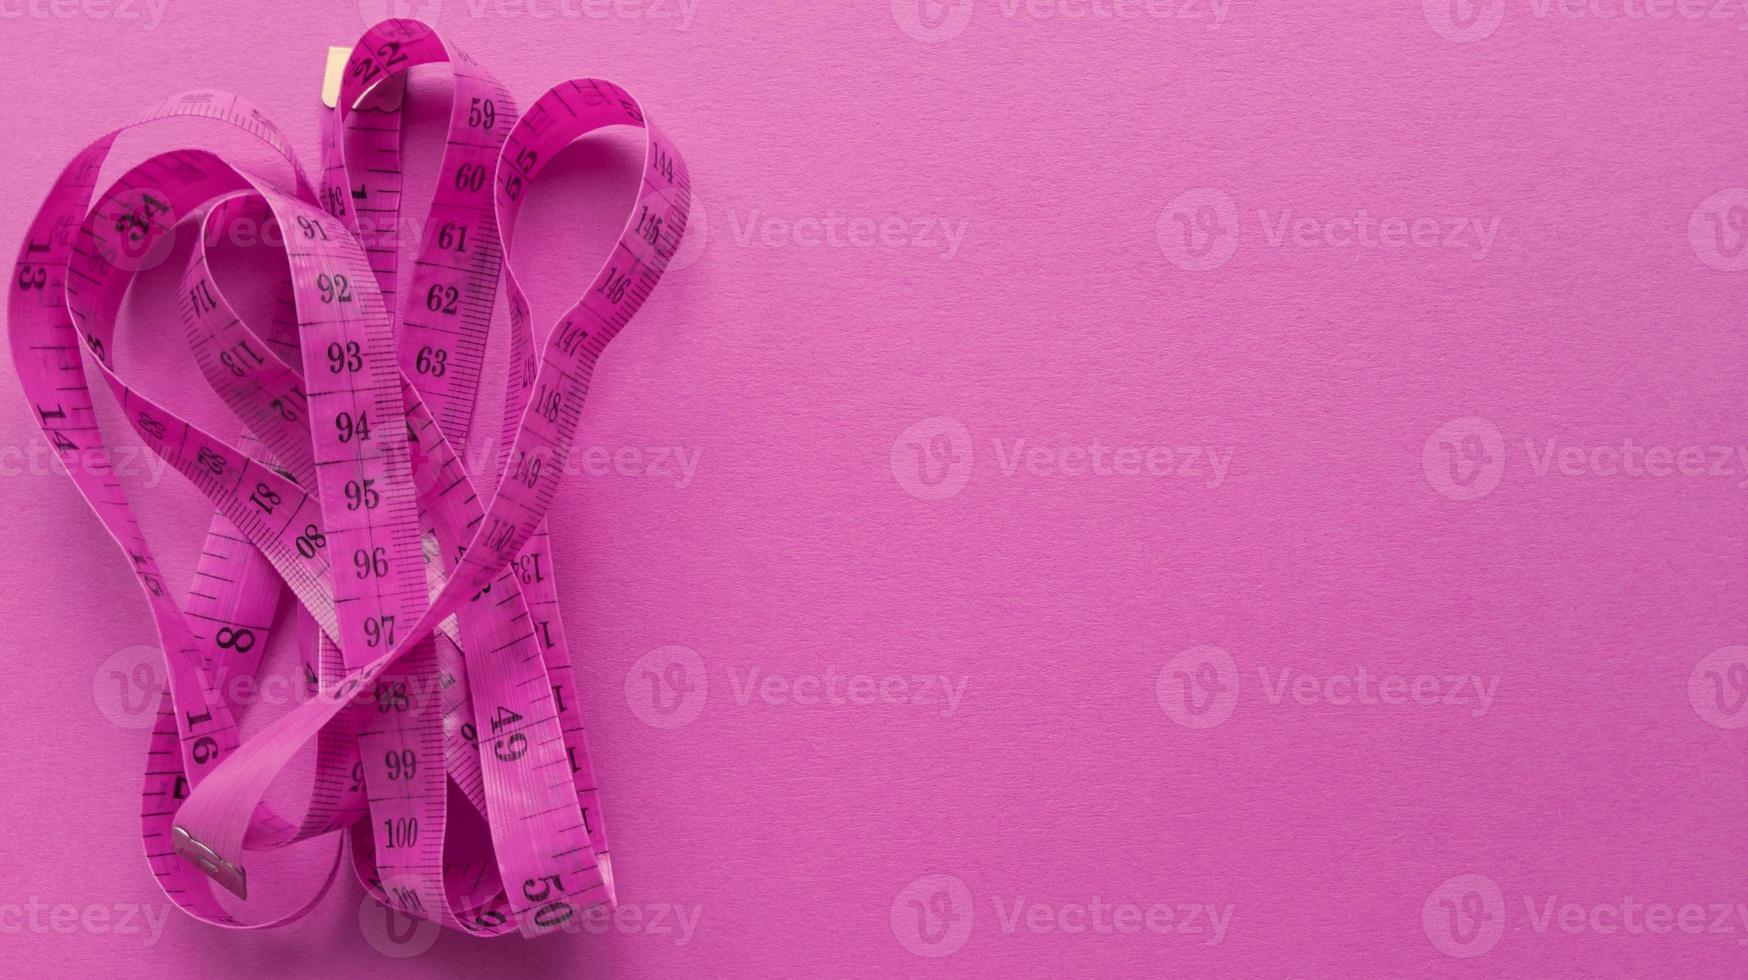 roze centimeter op roze achtergrond. eenvoudig plat leggen met pasteltextuur. fitness-concept. Stock foto. foto